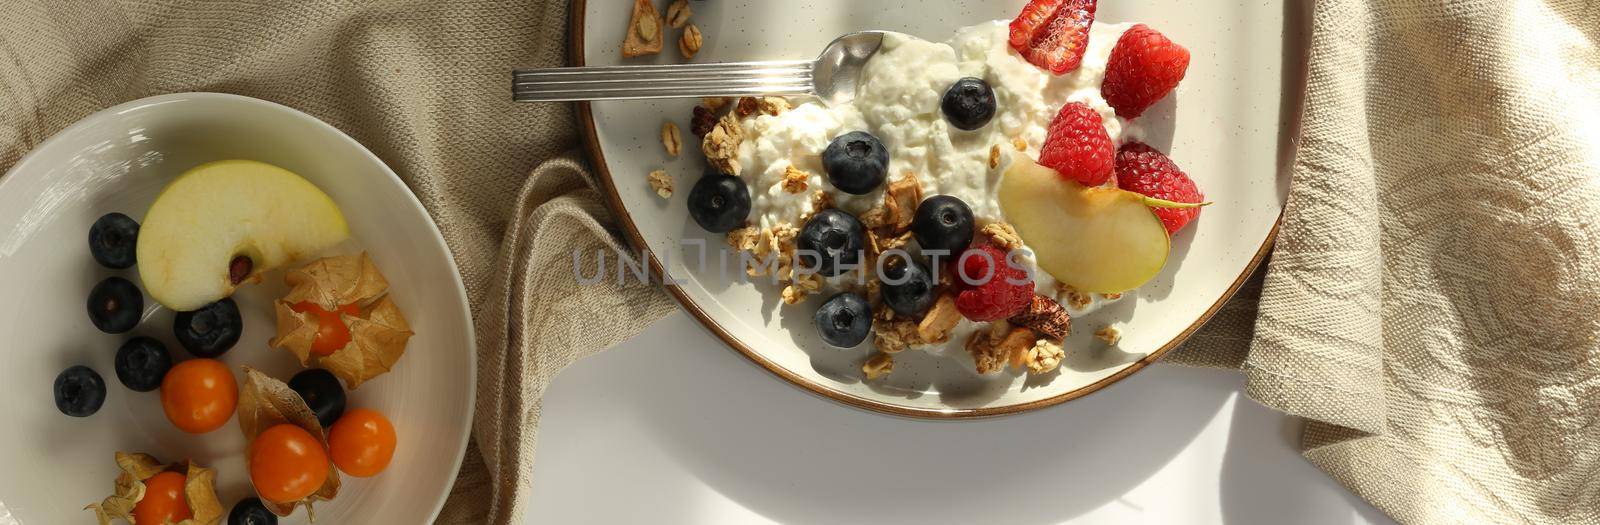 Healthy breakfast top view by NelliPolk